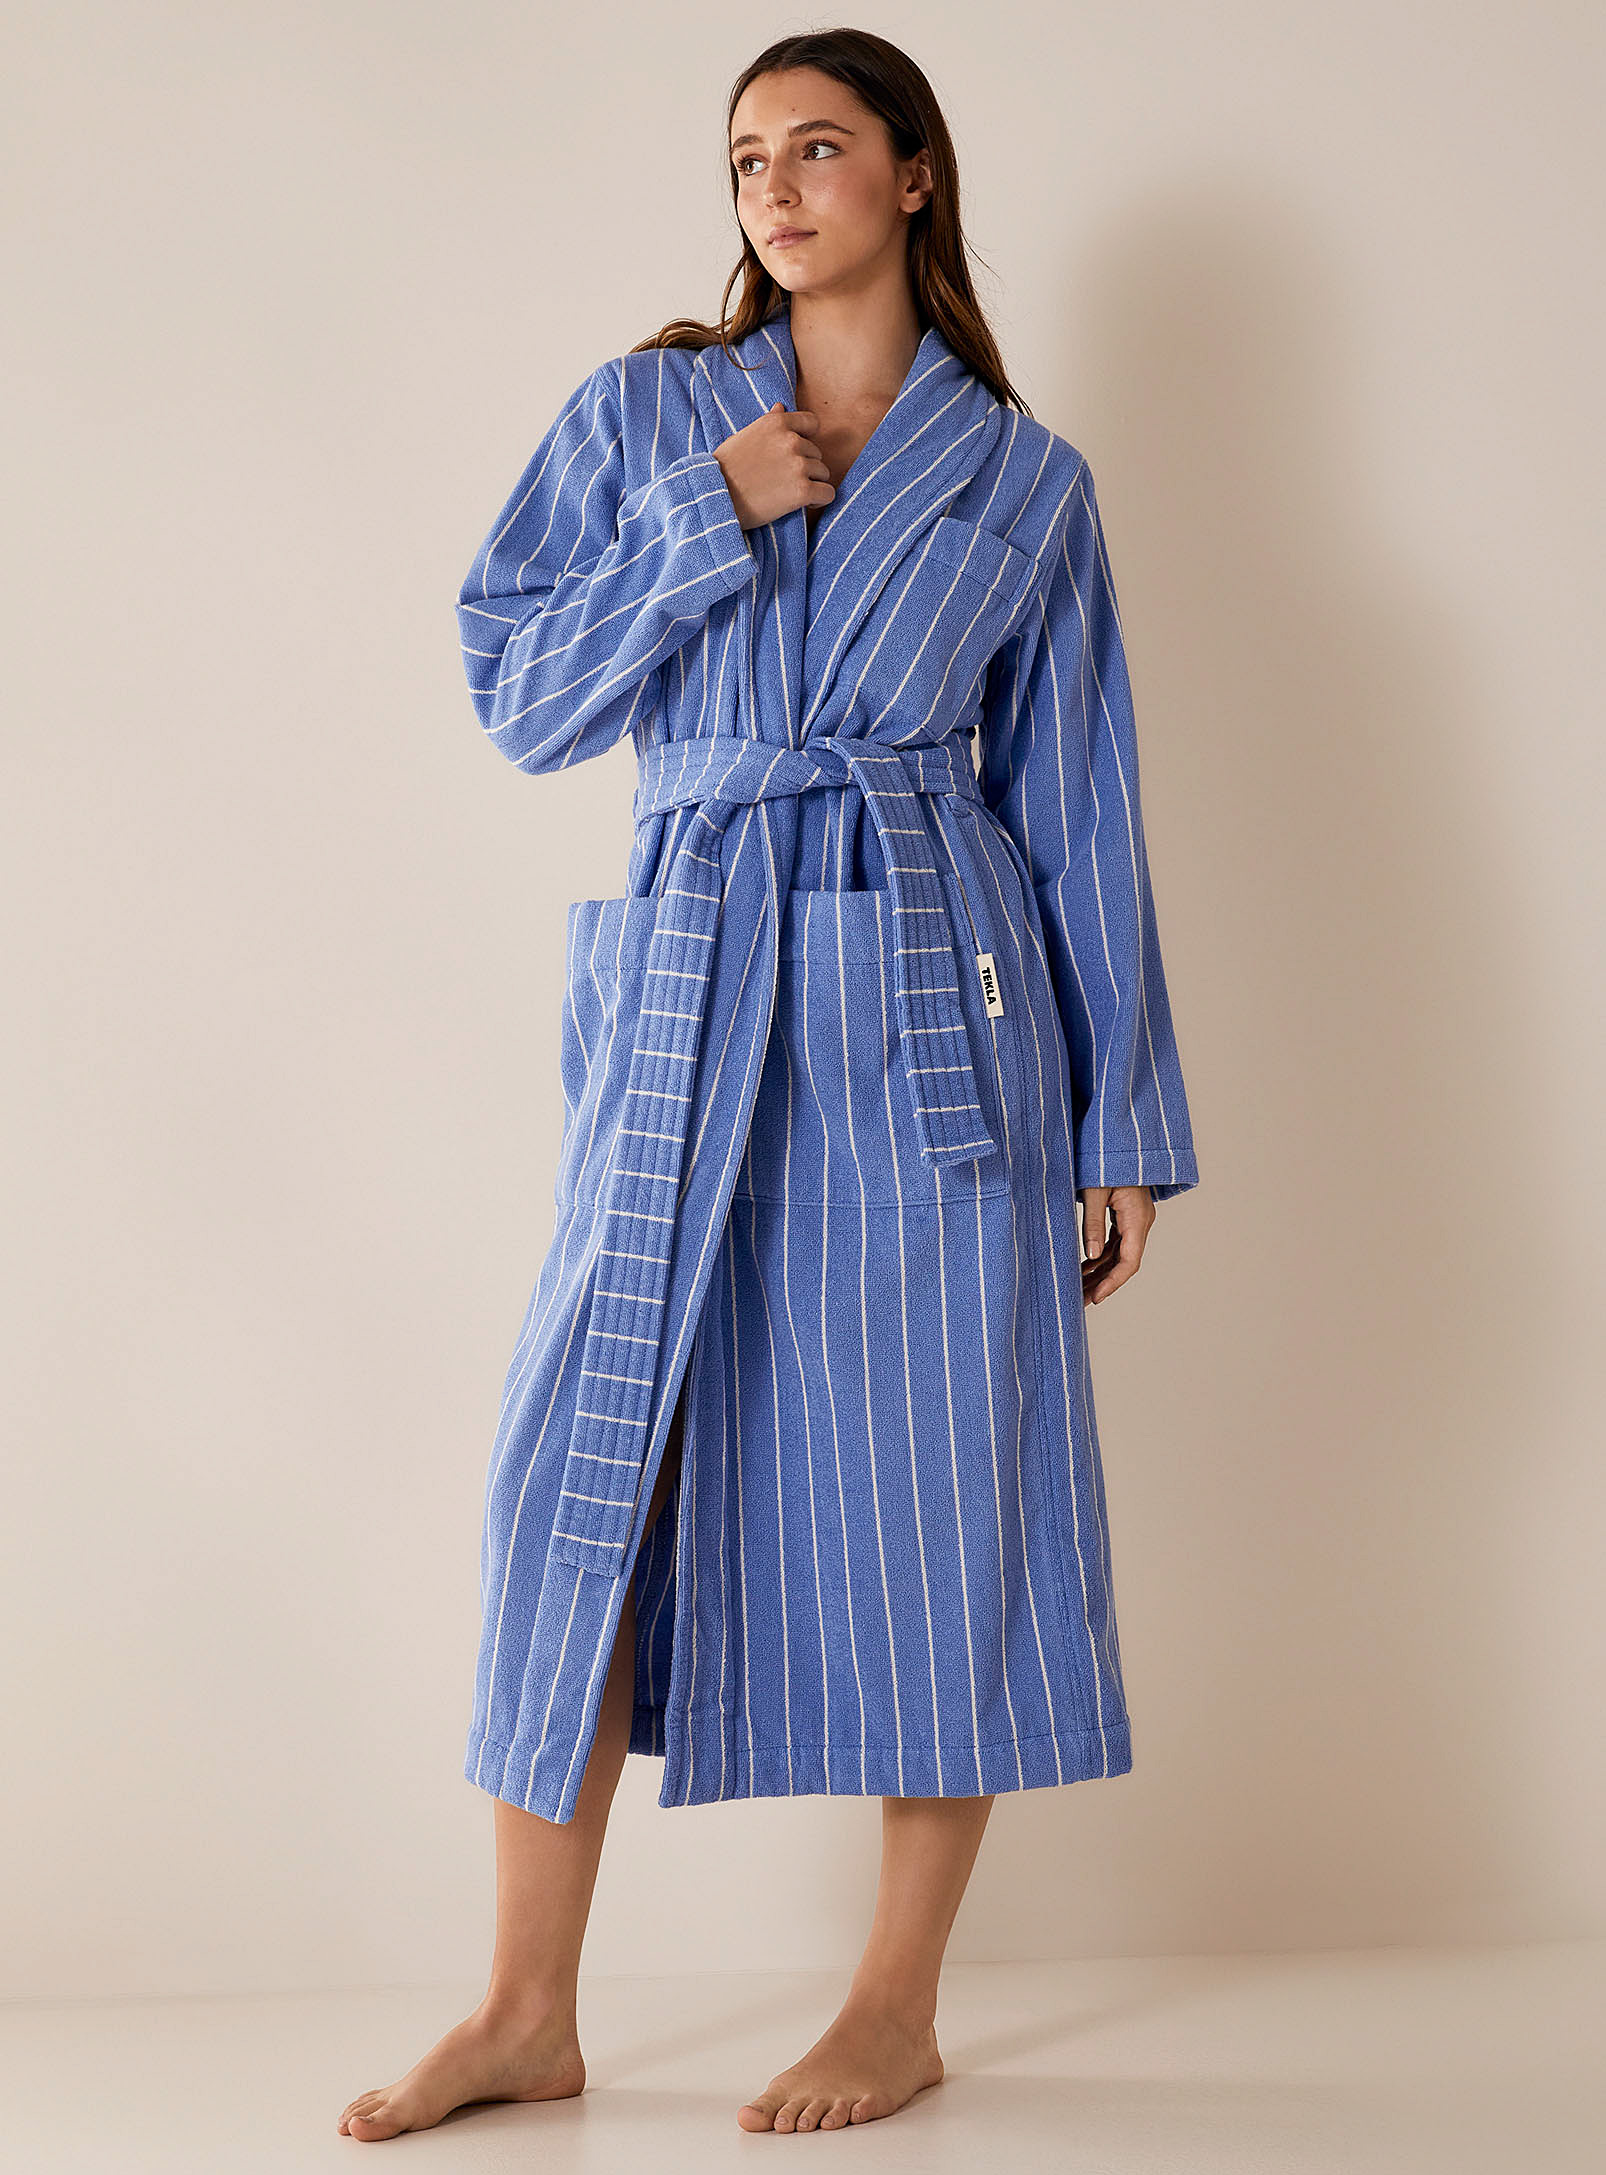 Tekla - Women's Striped organic cotton bathrobe